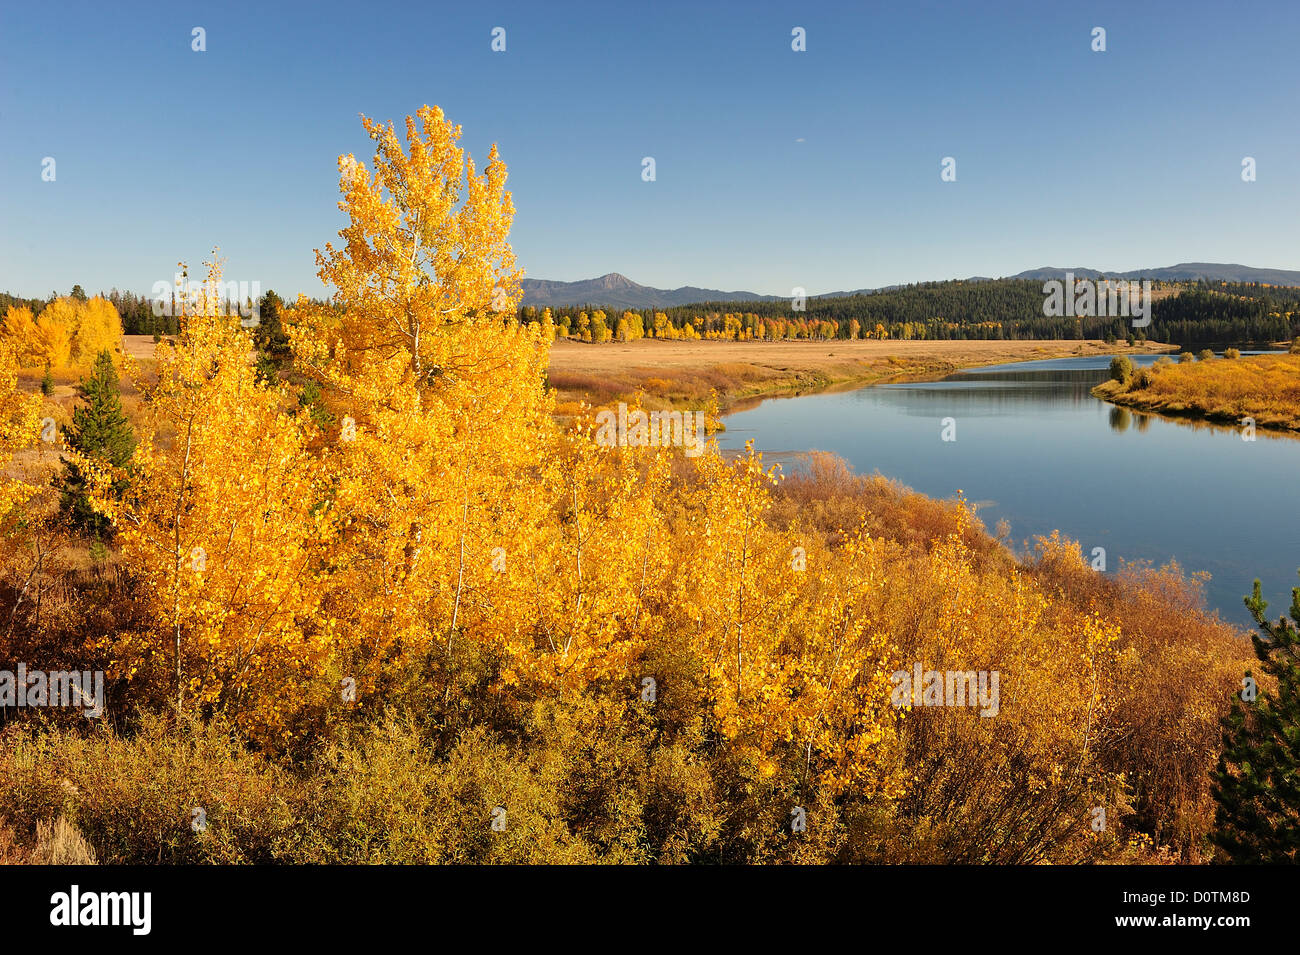 Aspen, Herbst, Farben, Laub, Oxbow Bend, Snake River, Laub, Grand Teton, Nationalpark, Wyoming, USA, Vereinigte Staaten, Ameri Stockfoto